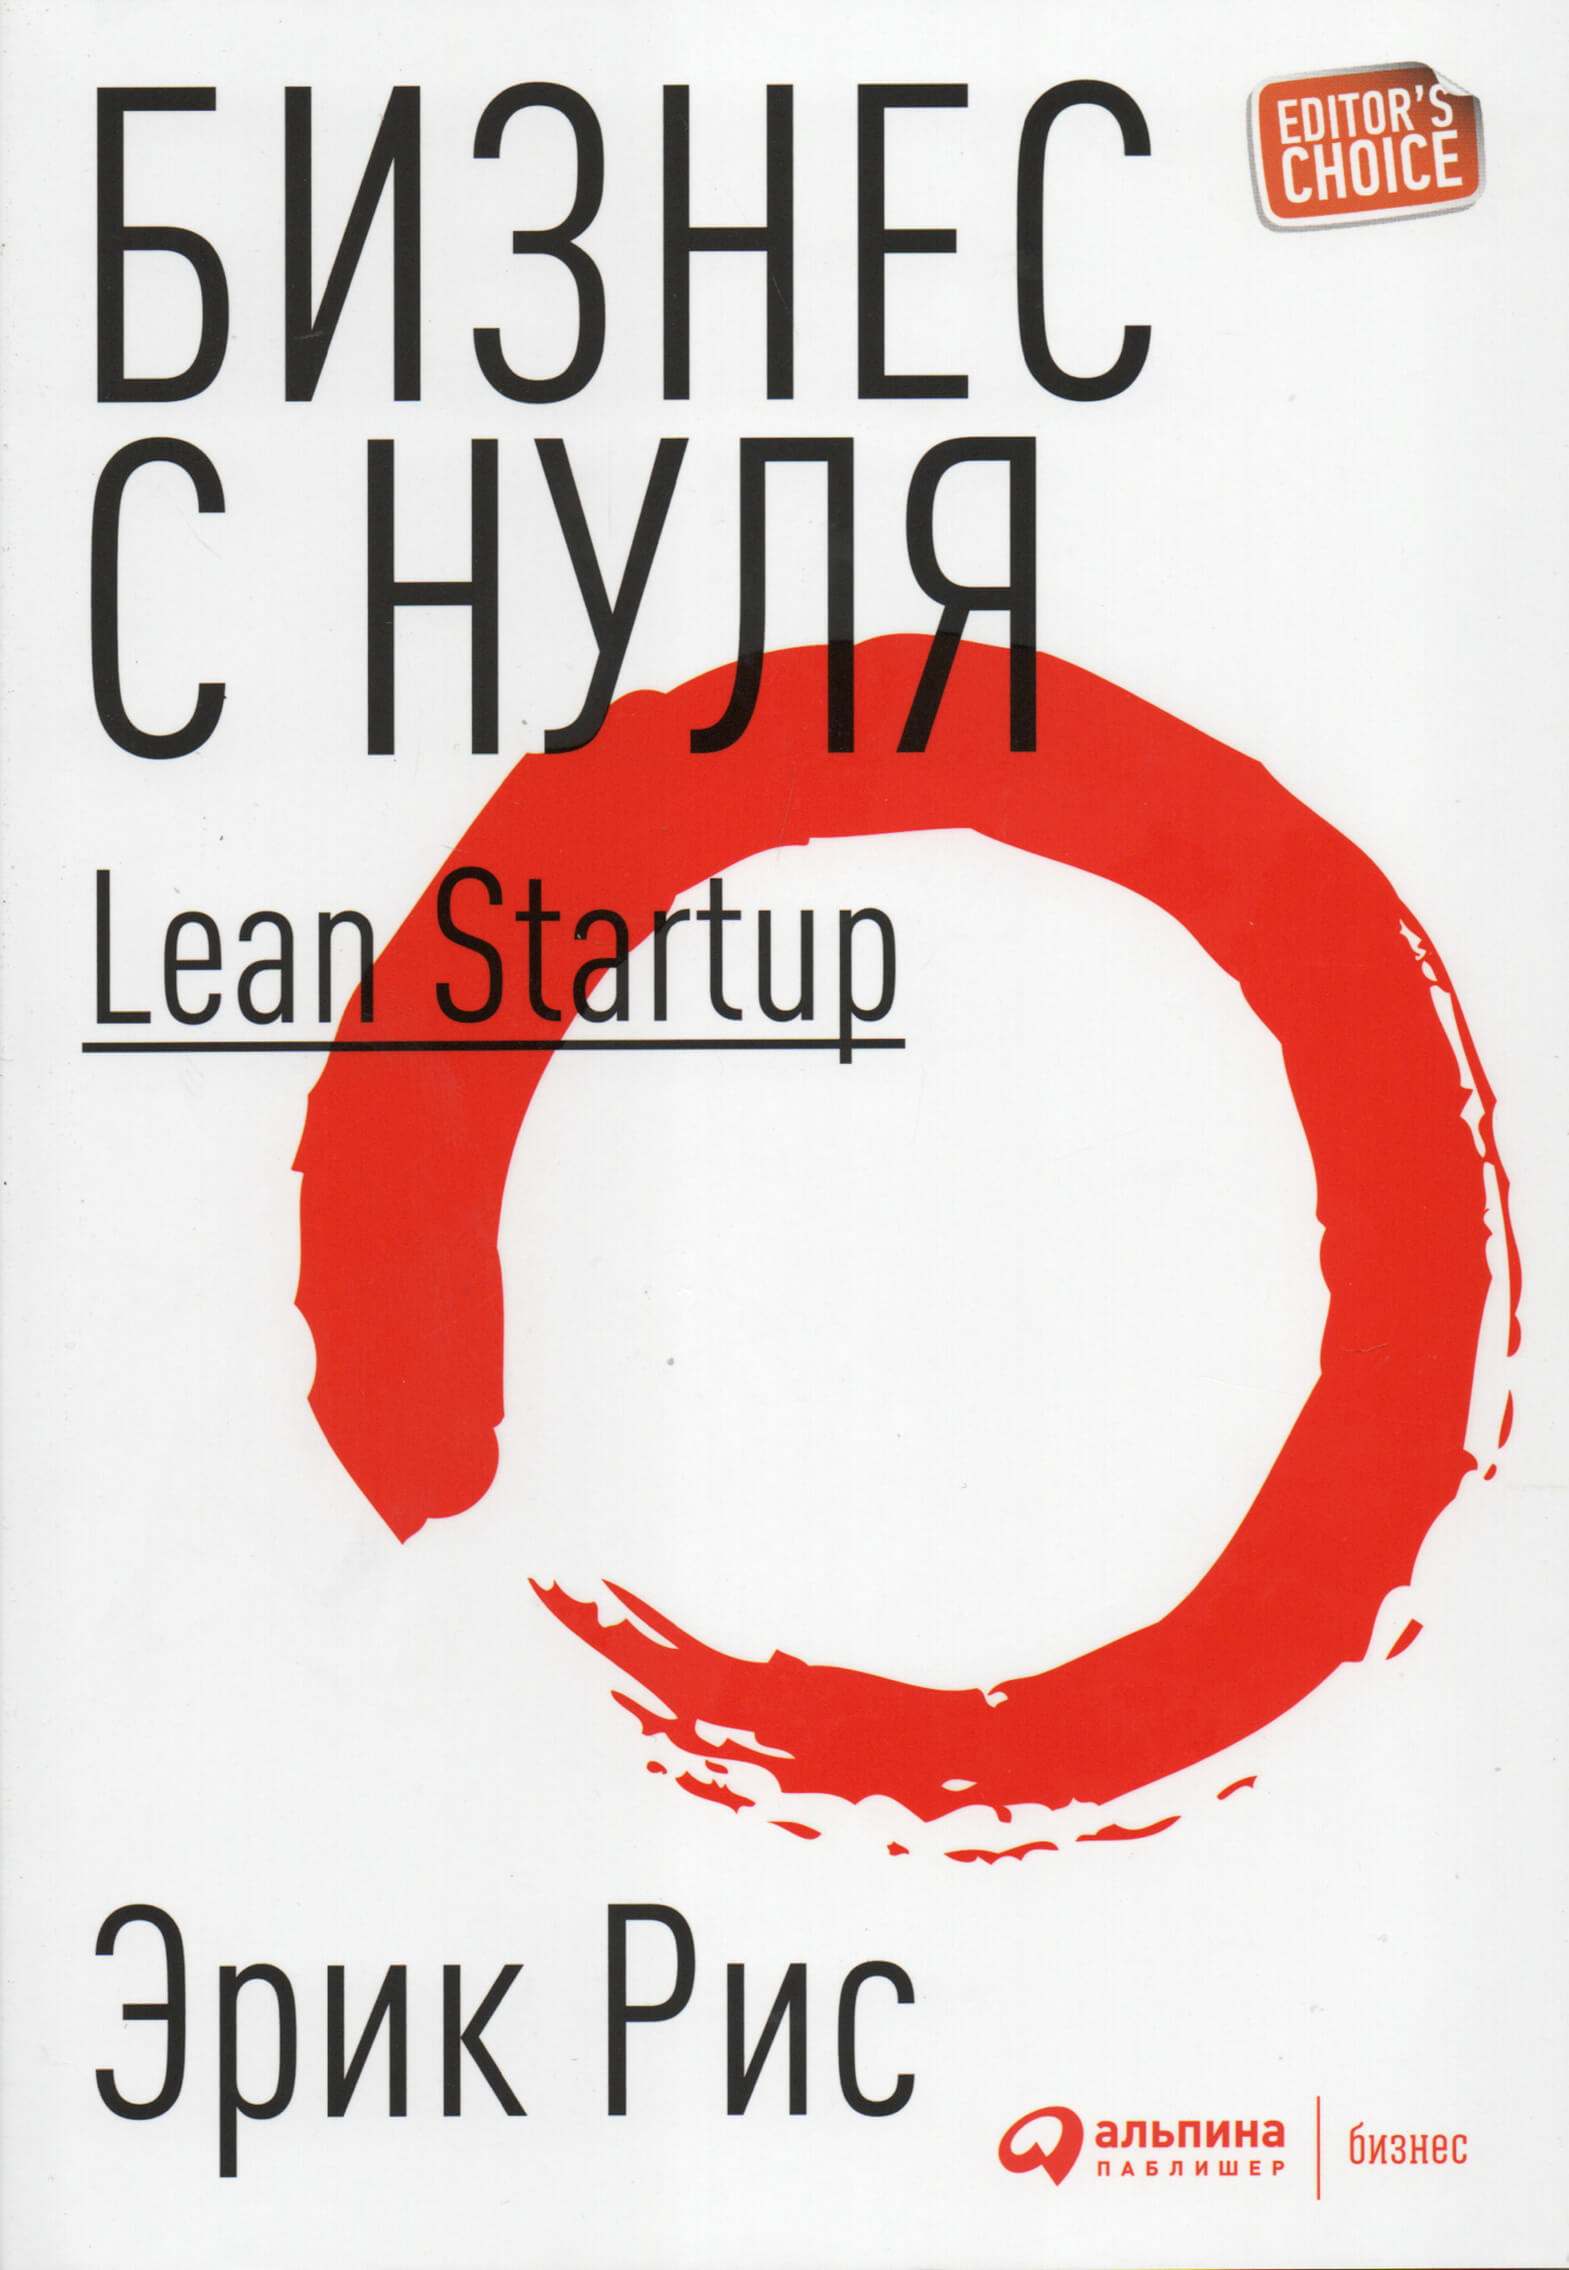 Бизнес с нуля. Метод Lean Startup для быстрого тестирования идей и выбора бизнес-модели. Автор — Эрик Рис. 